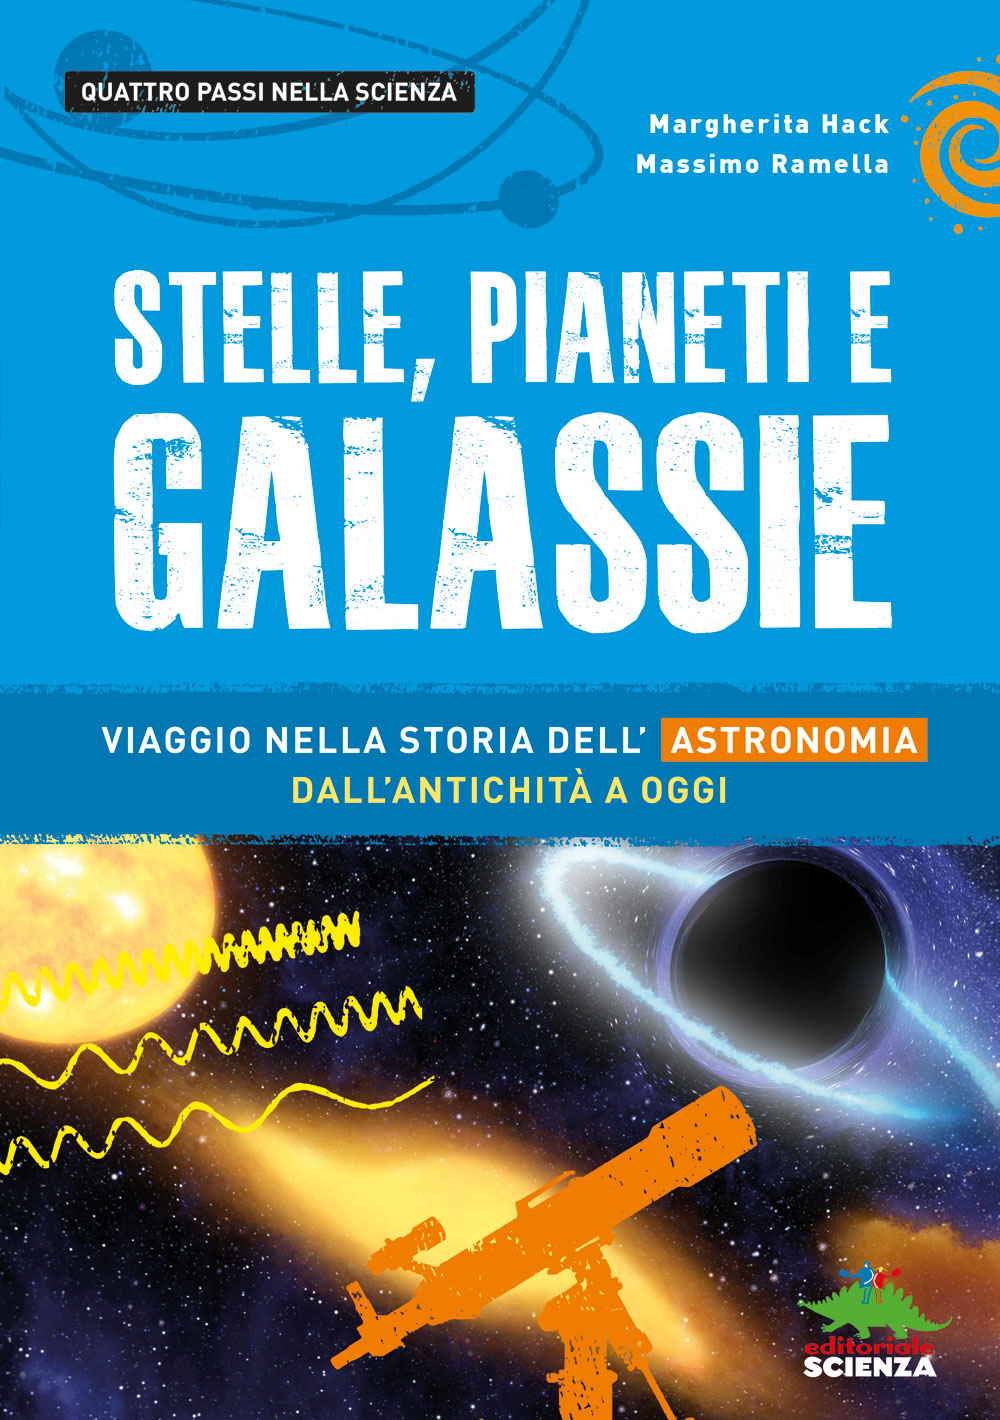 Stelle, pianeti e galassie::Viaggio nella storia dell'astronomia dall'antichità a oggi